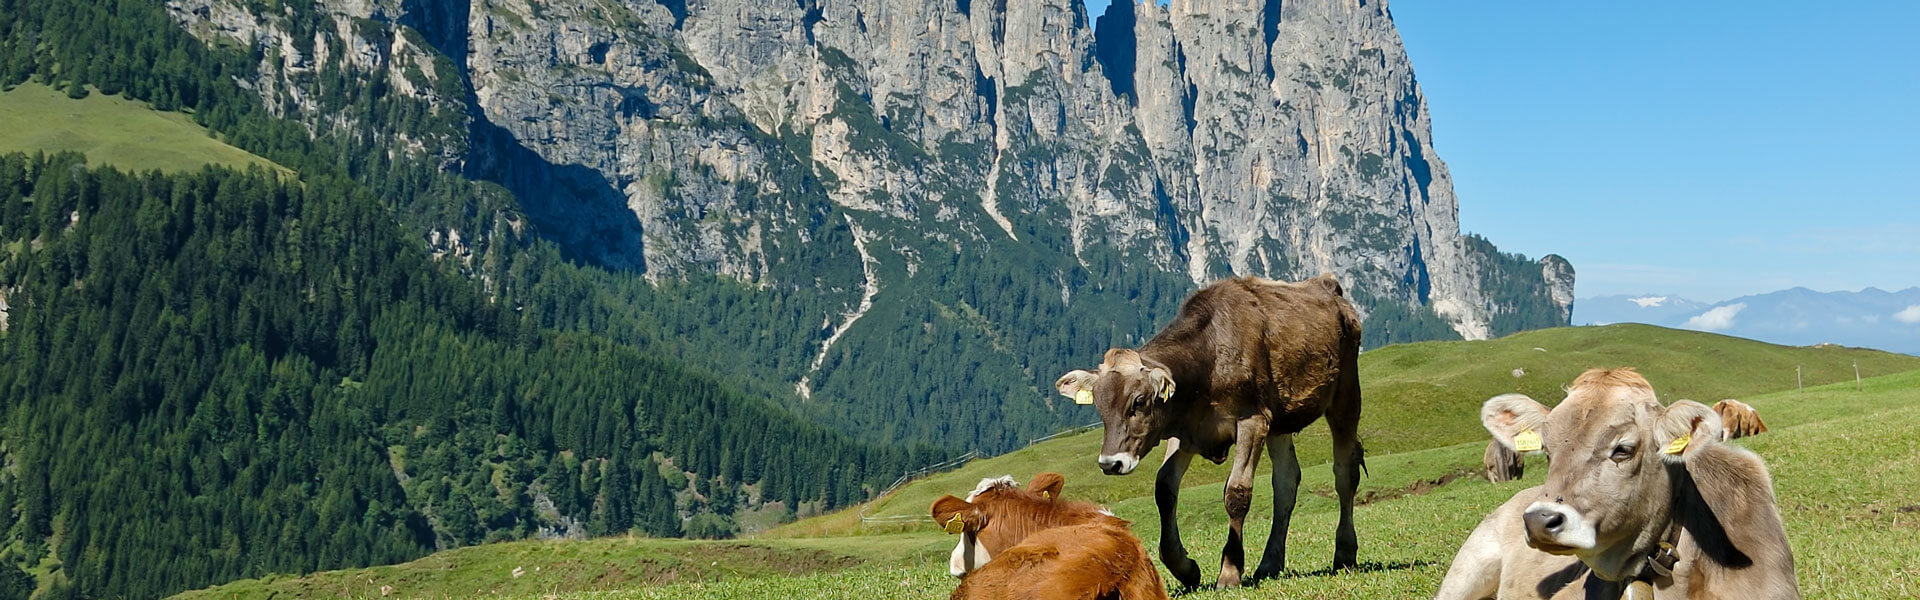 Eine Wanderung durch die Alpen birgt viele landschaftliche Höhepunkte.